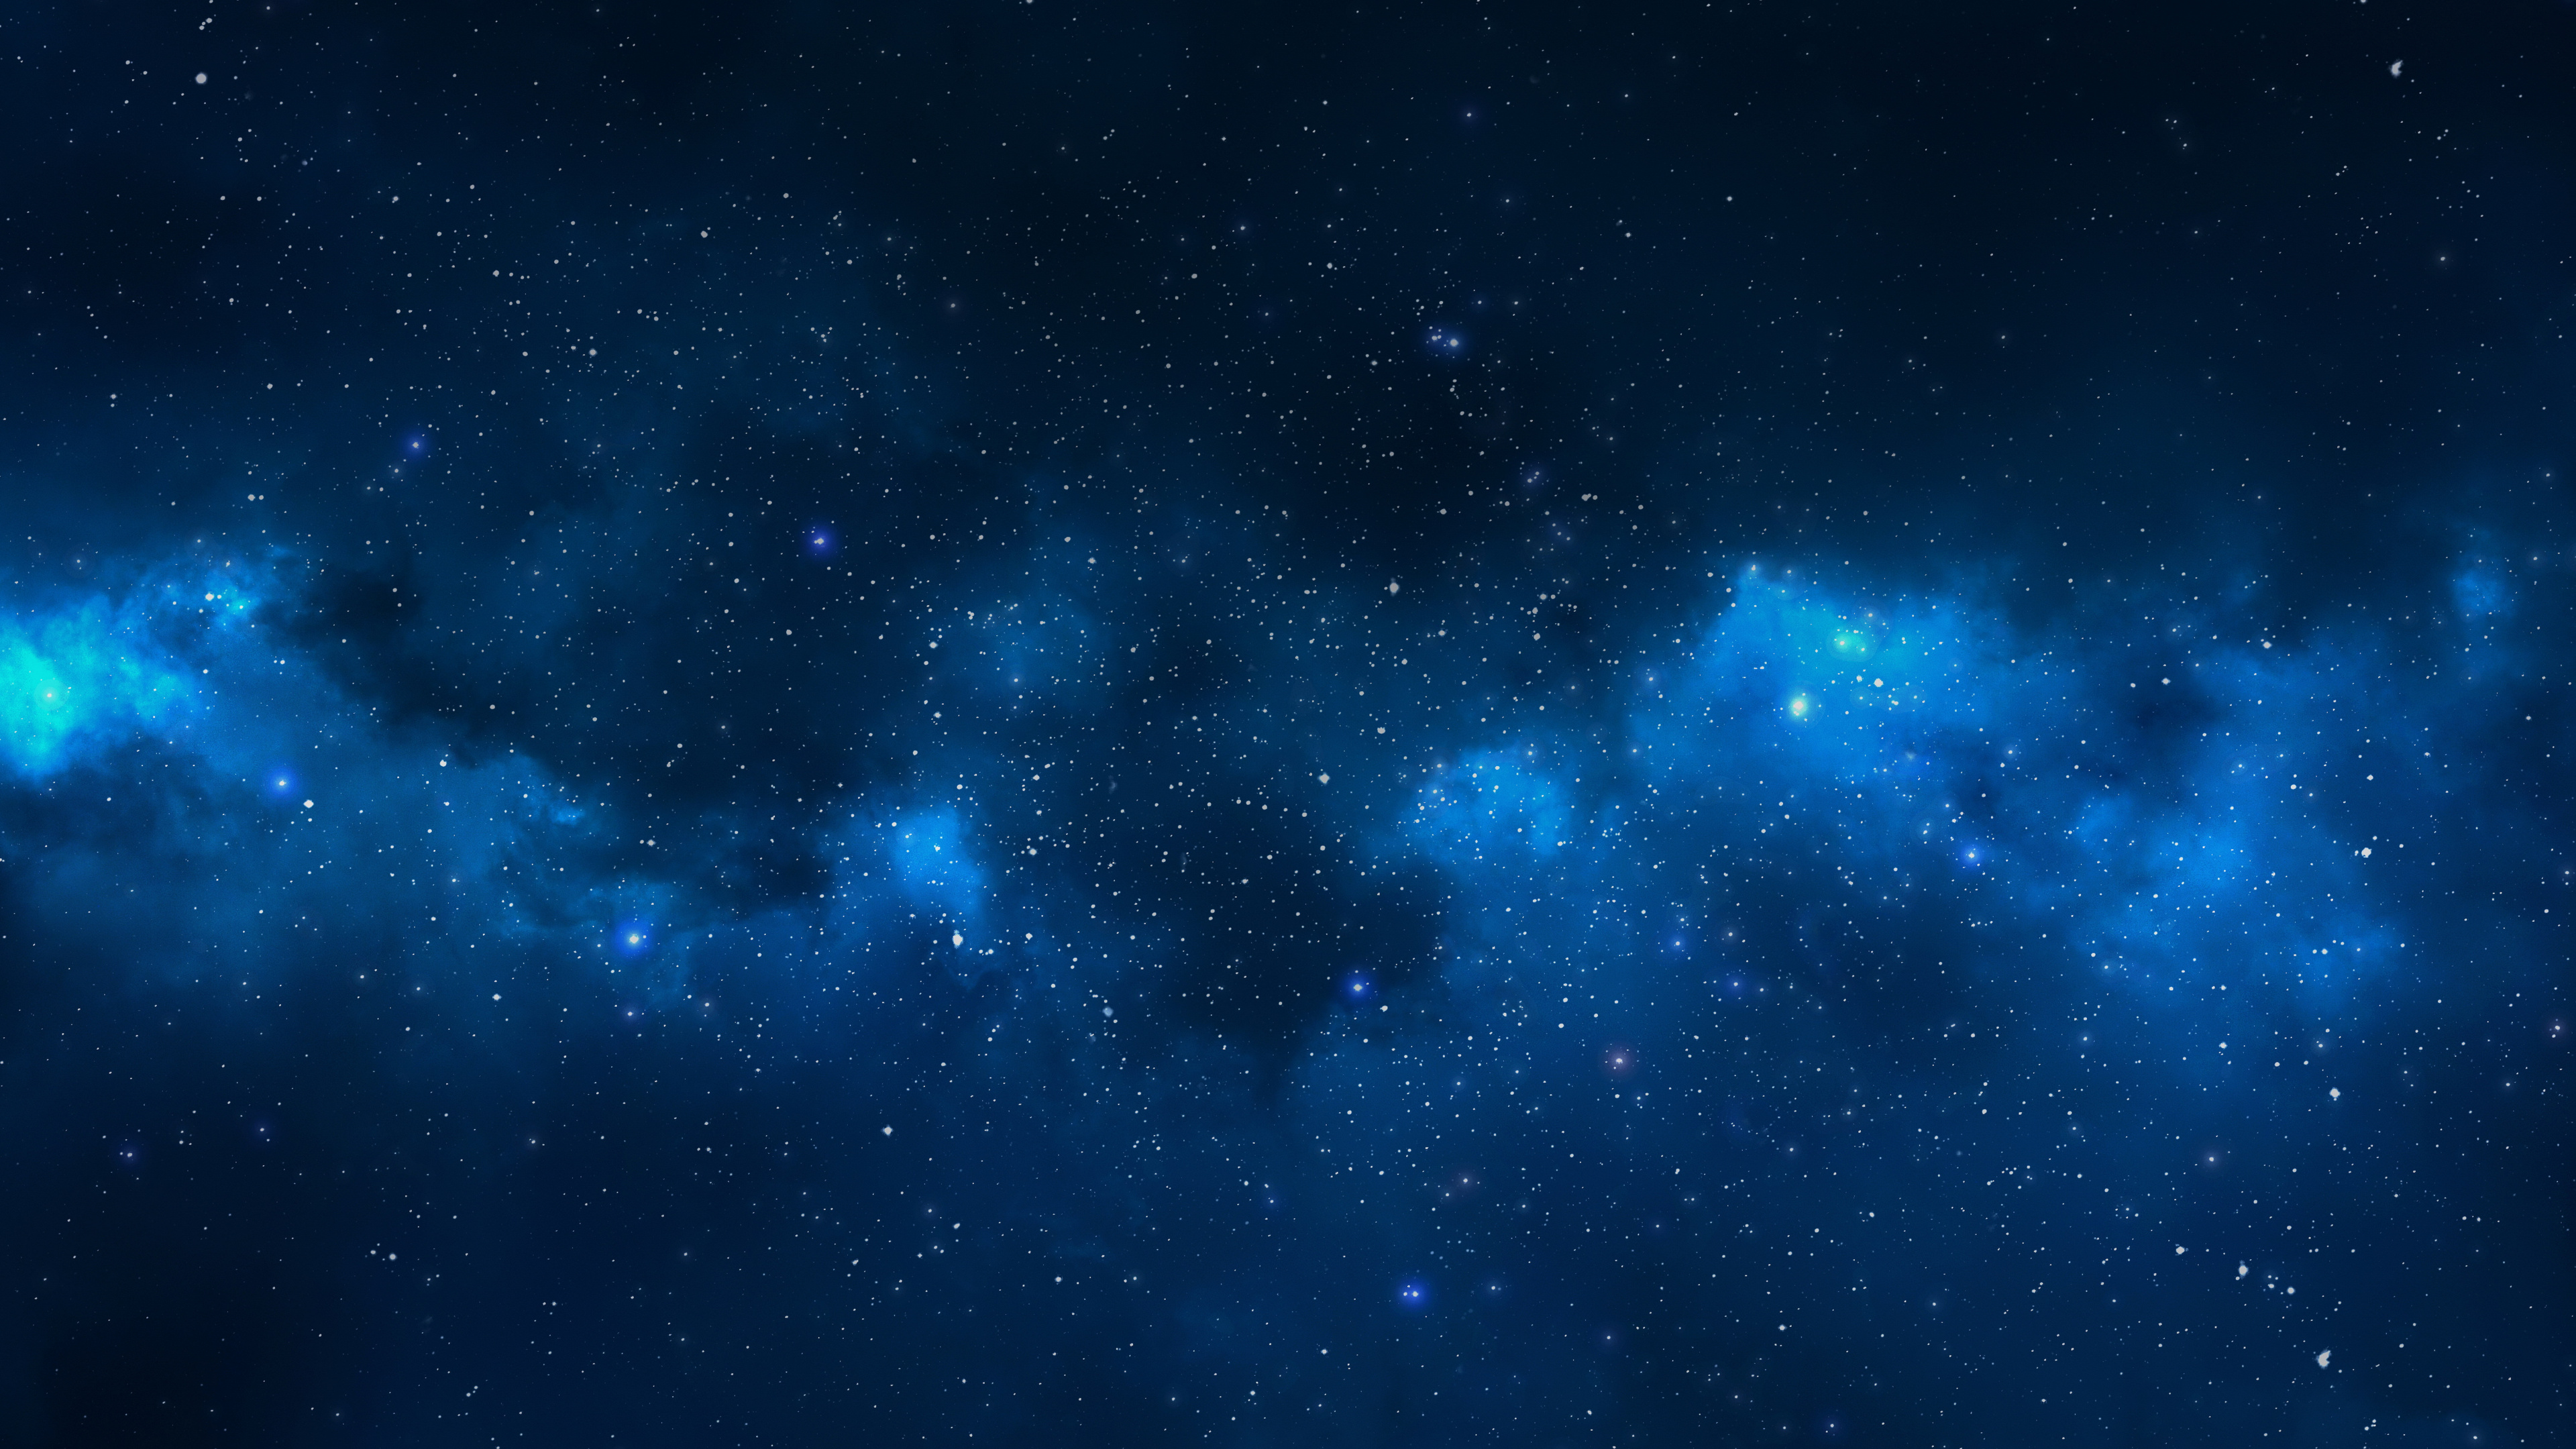 天文学对象, 外层空间, 空间, 夜晚的天空, 明星 壁纸 3840x2160 允许